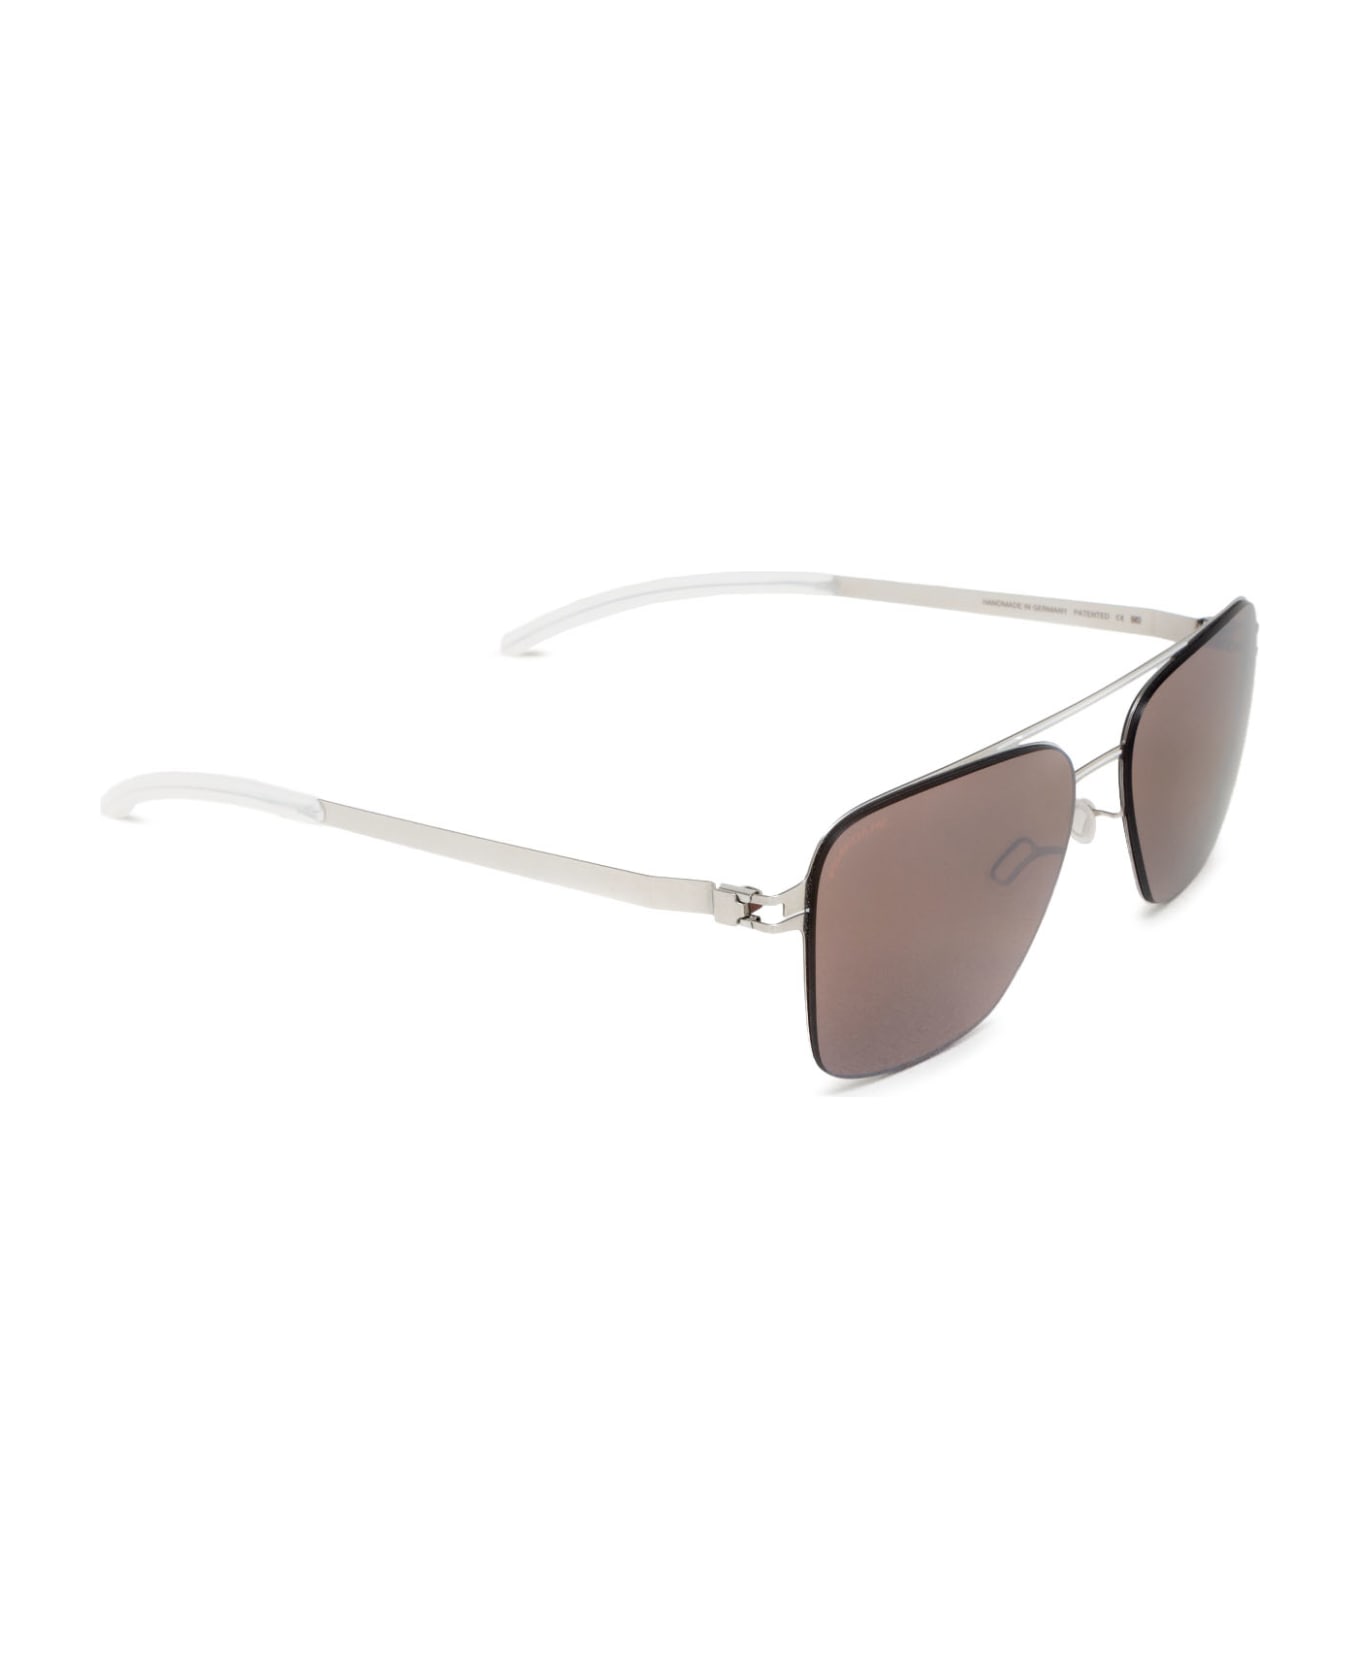 Mykita Bernie Sun Silver/white Sunglasses - Silver/White